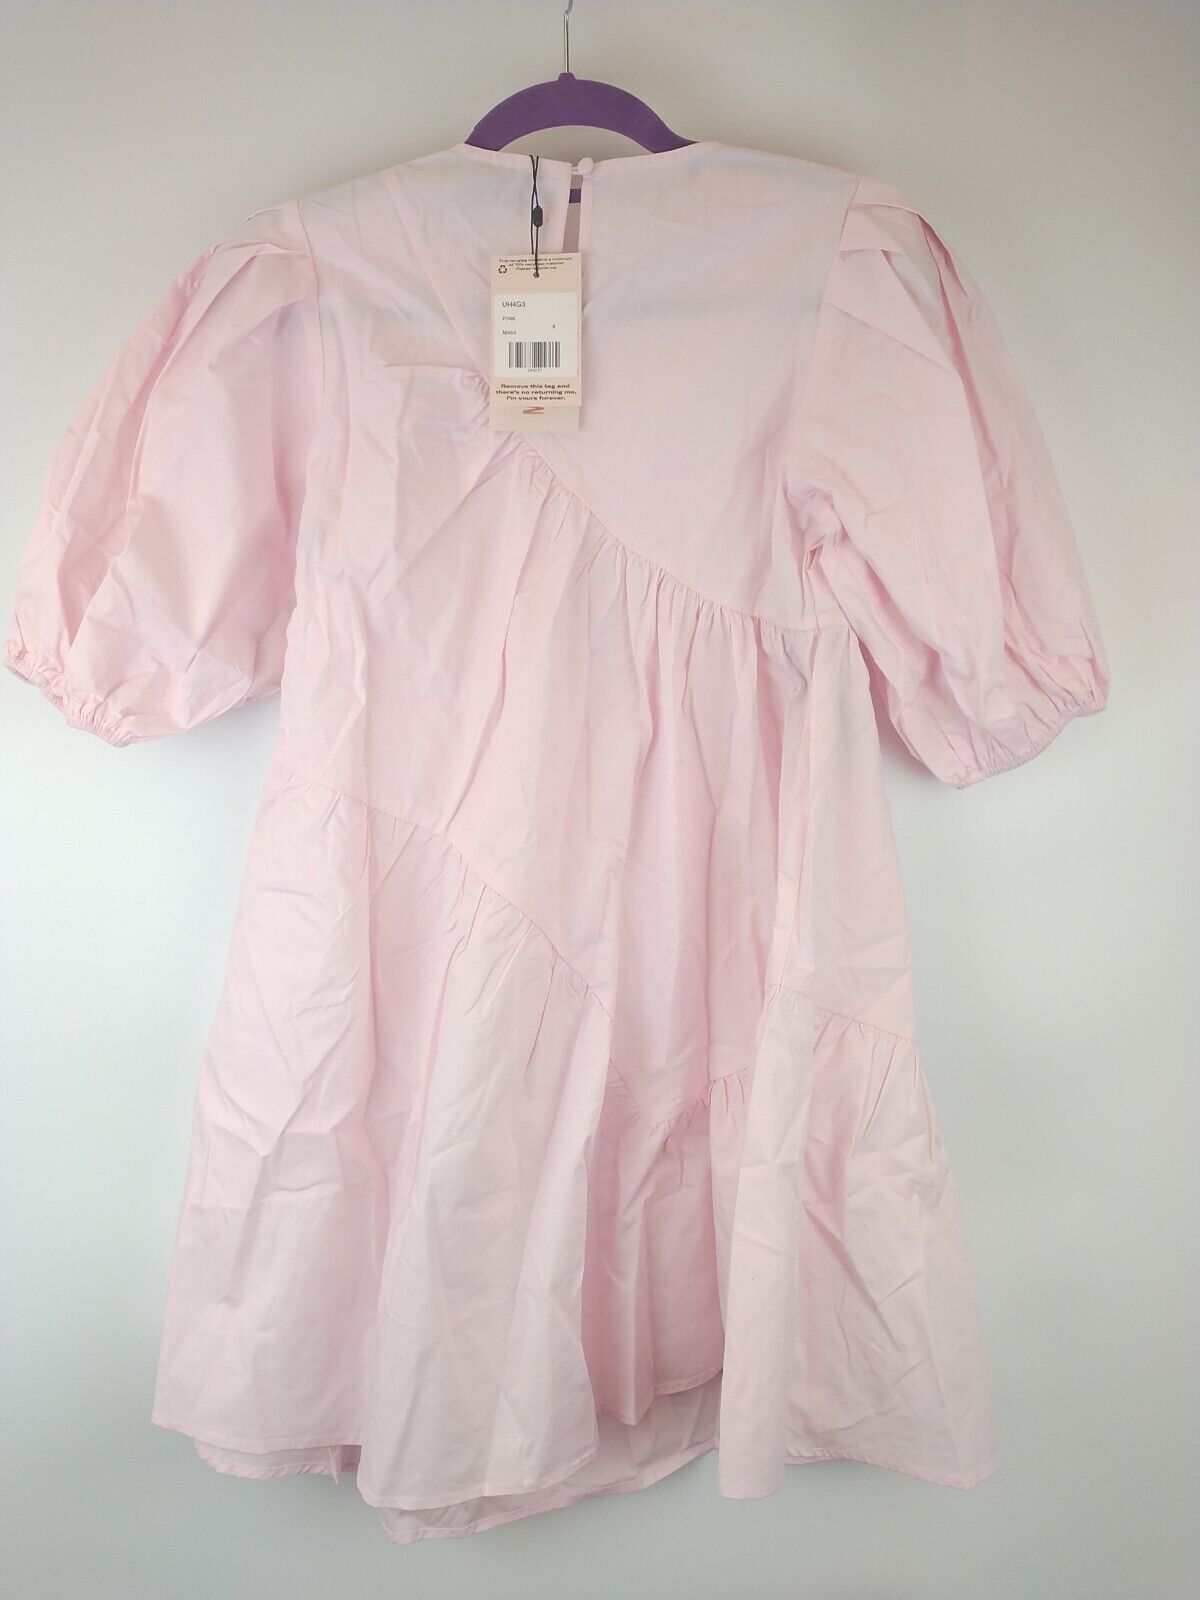 Missguided Frill Smock Pink Dress. UK Size 6 ****Ref V165